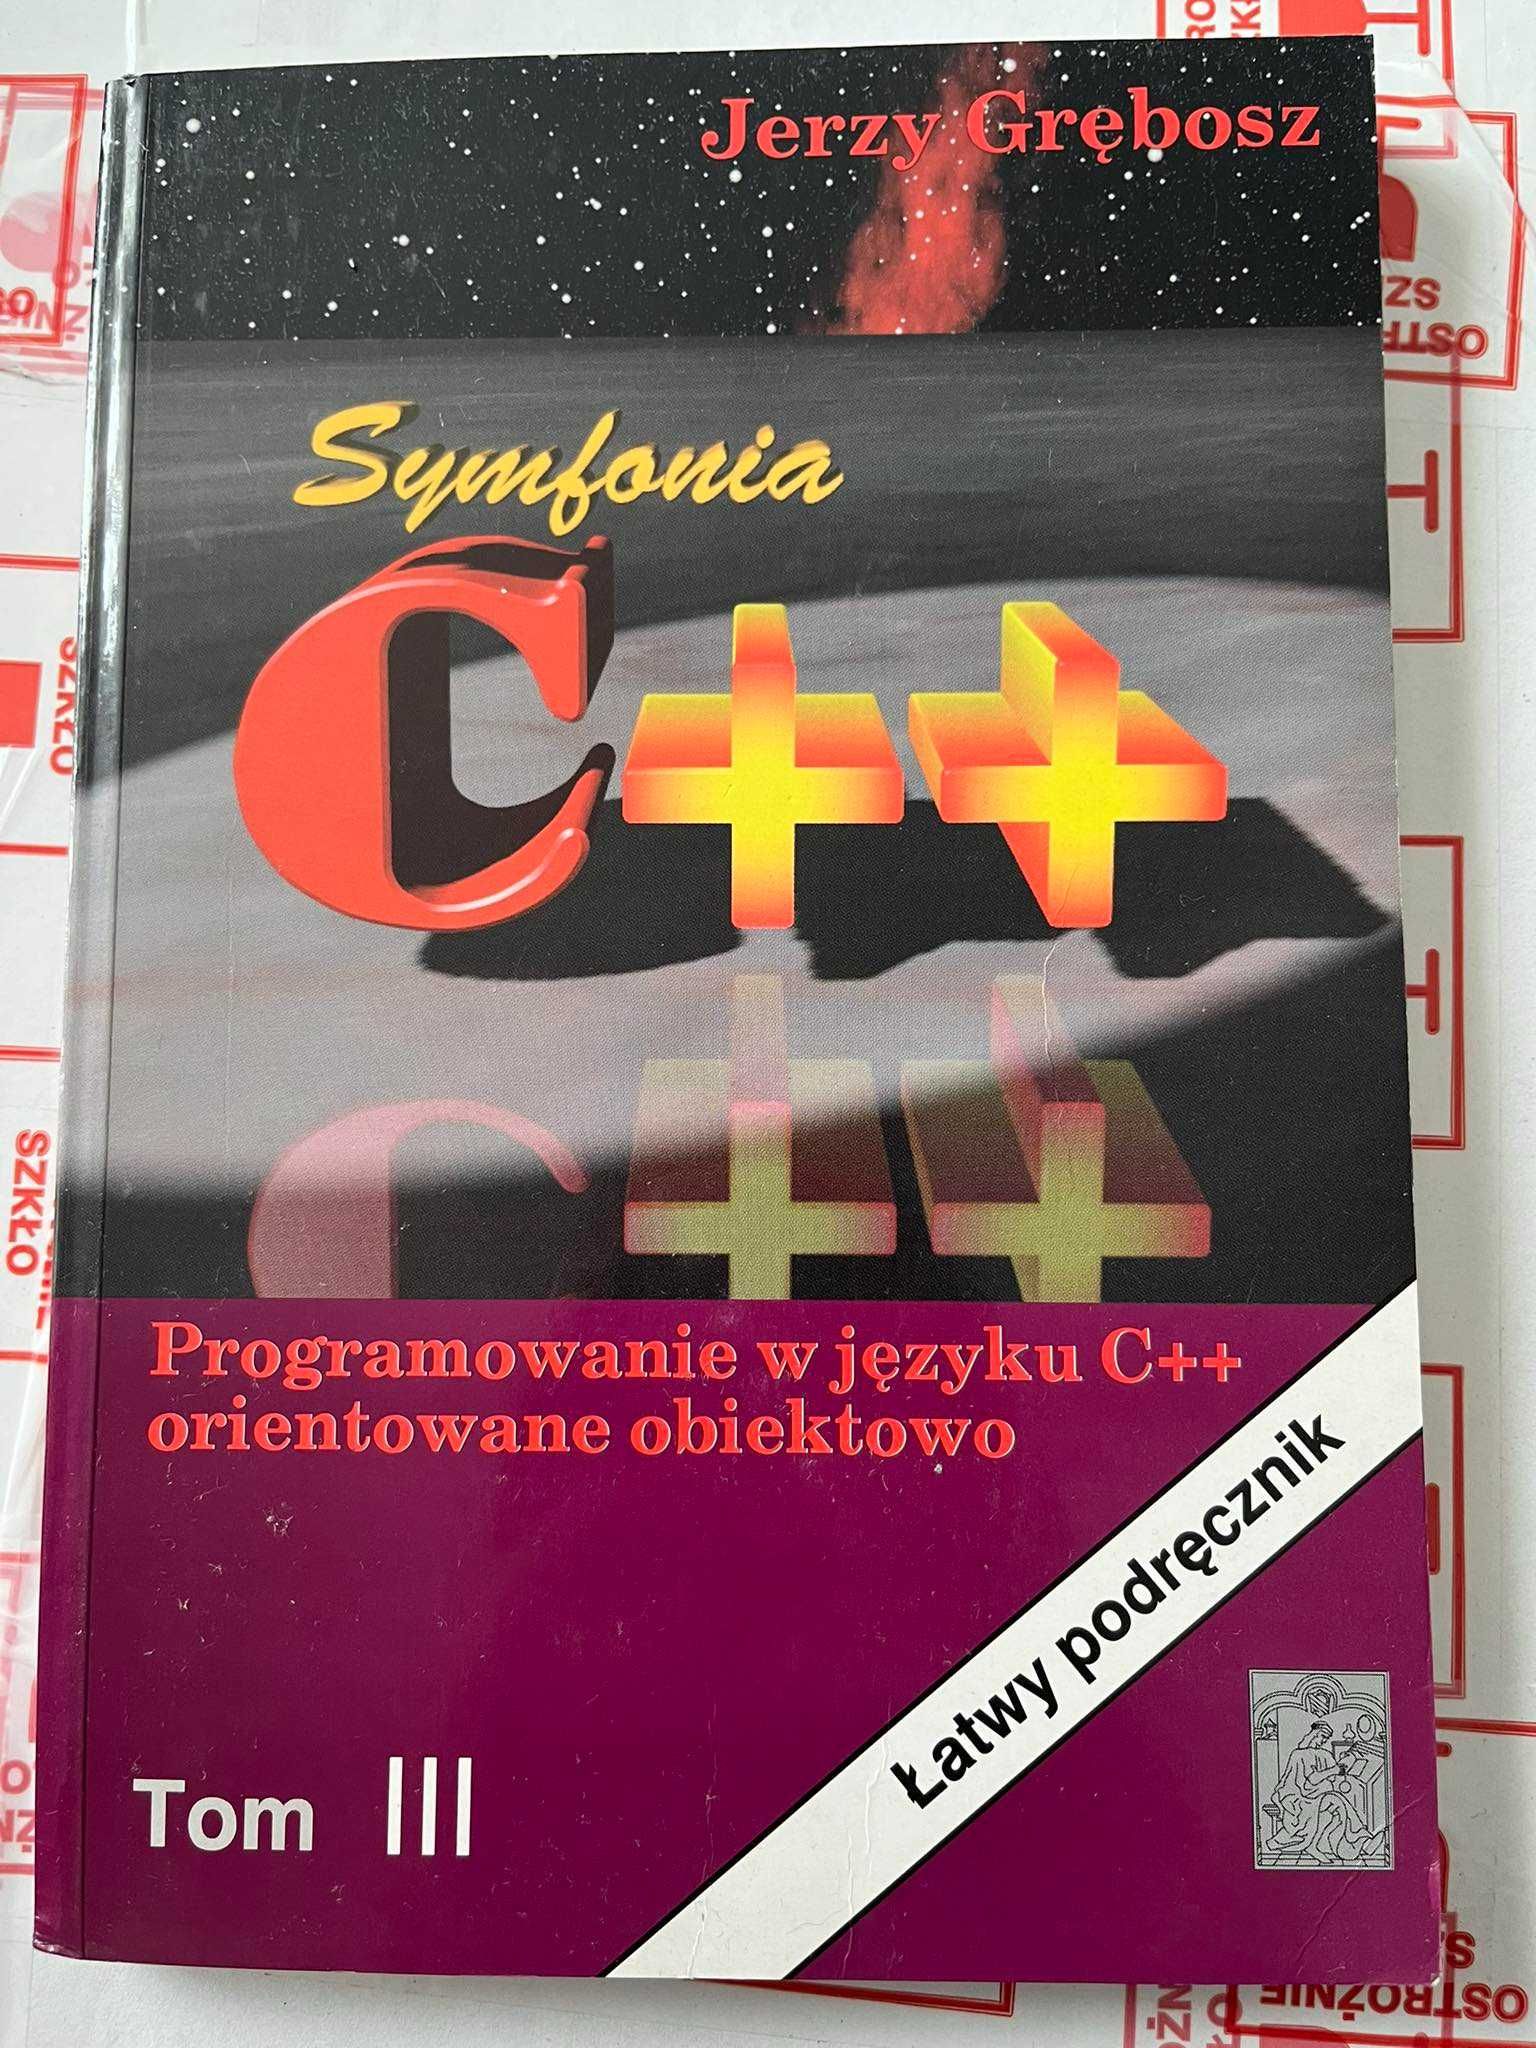 Jerzy Grębosz Symfonia C++